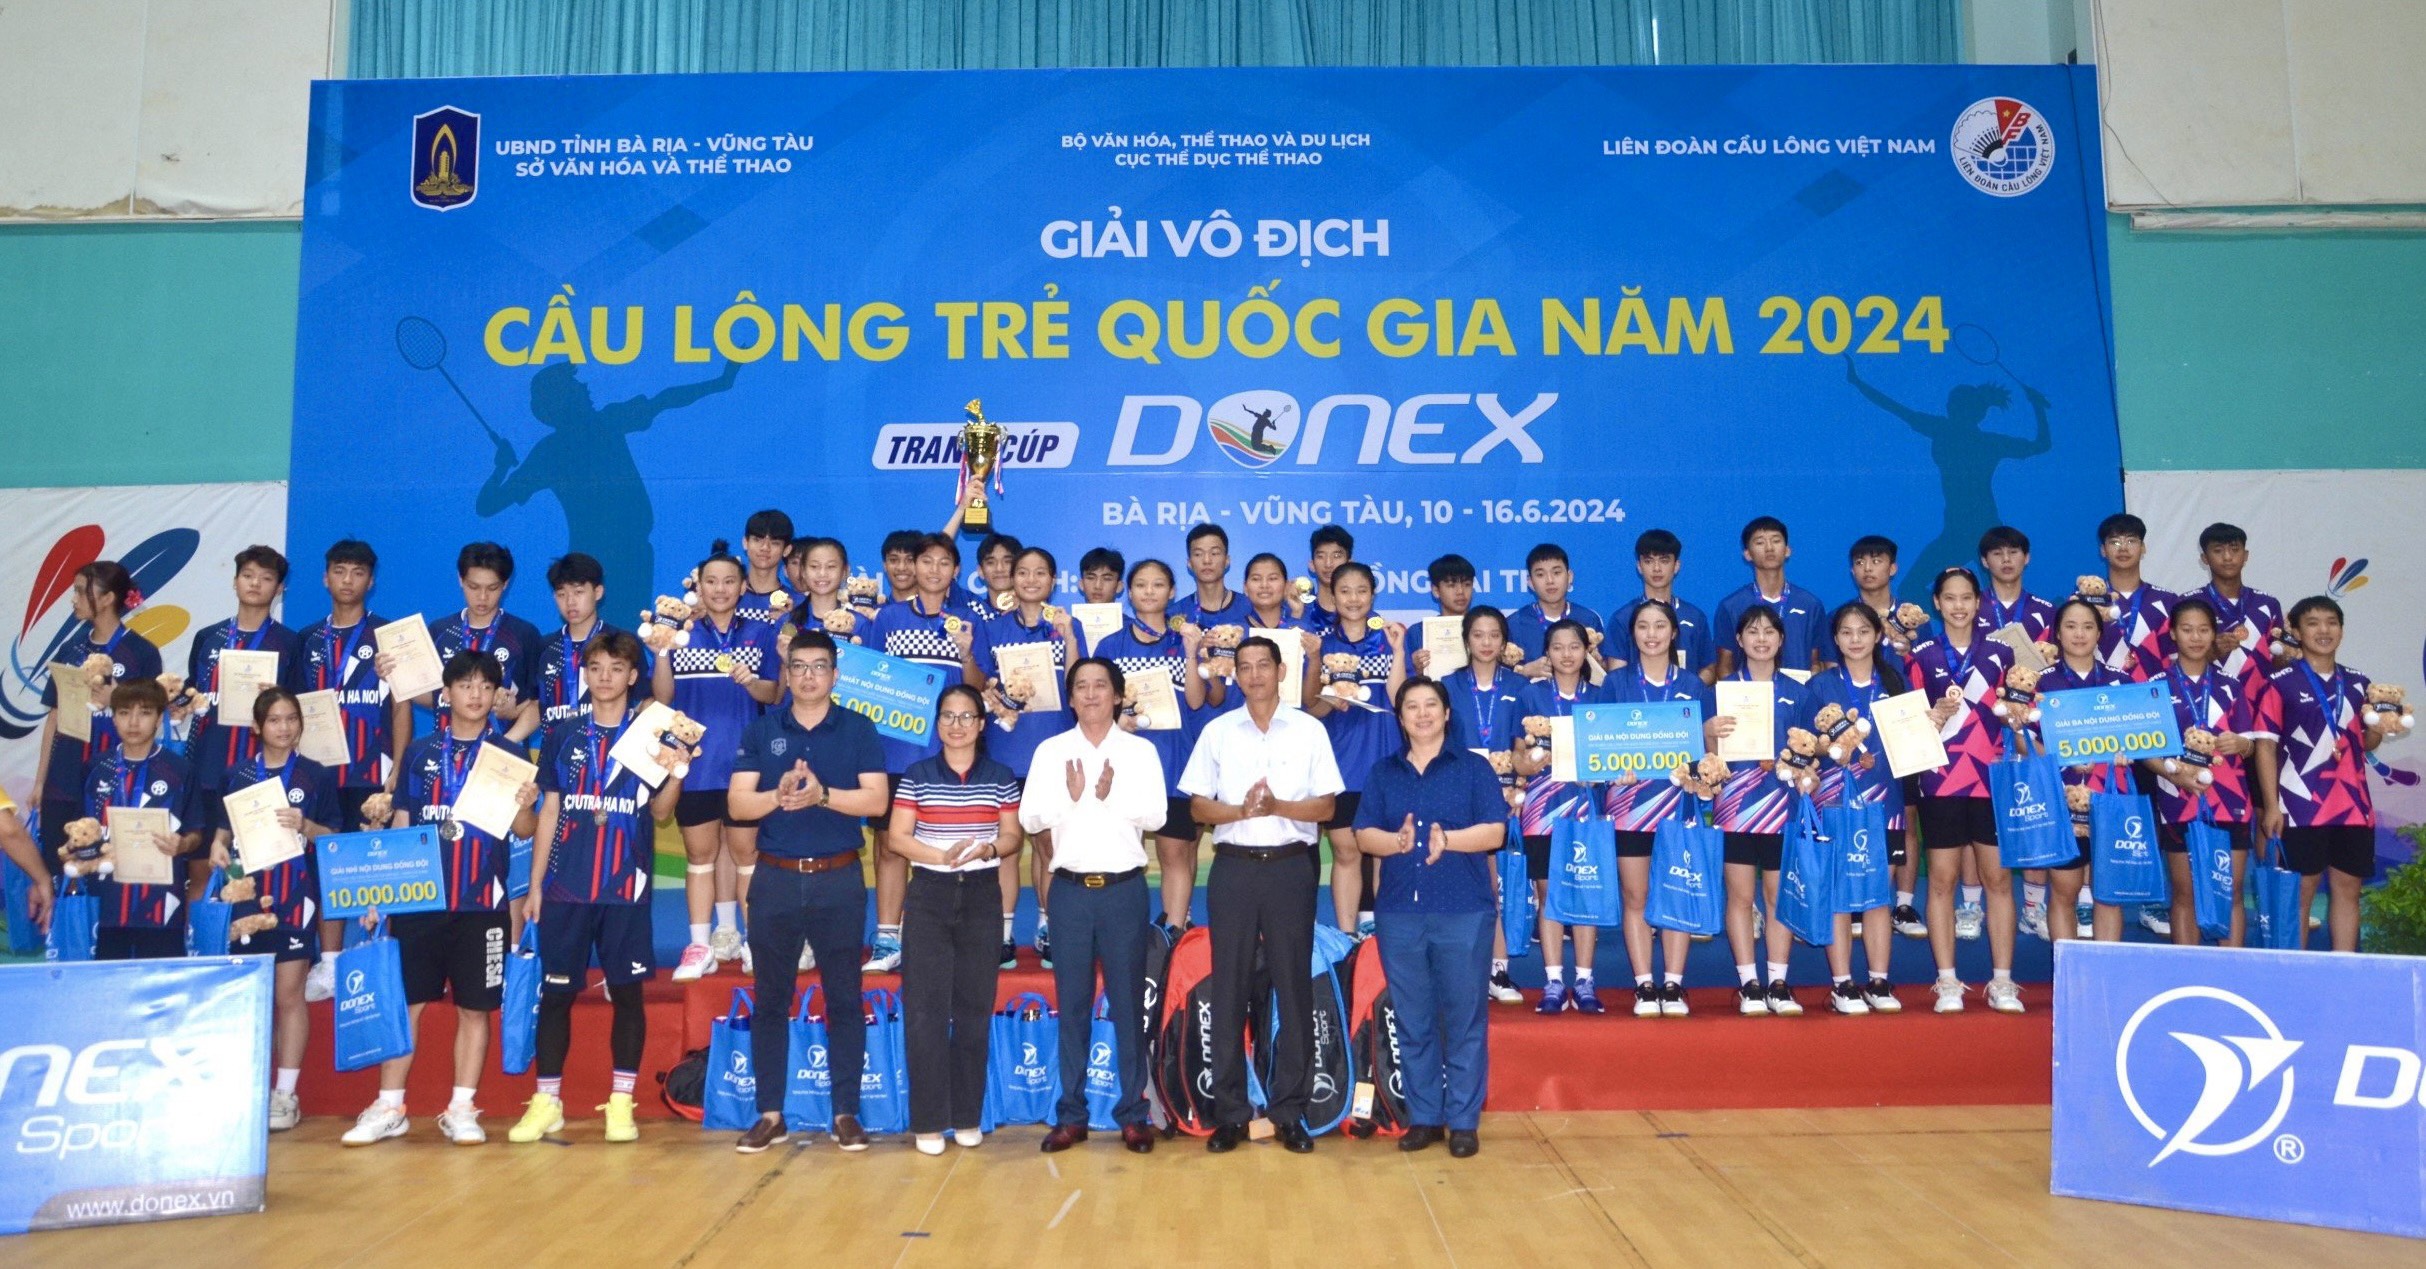 Đội TP. Hồ Chí Minh xuất sắc giành chức vô địch tại giải giải vô địch cầu lông trẻ quốc gia. năm 2024.